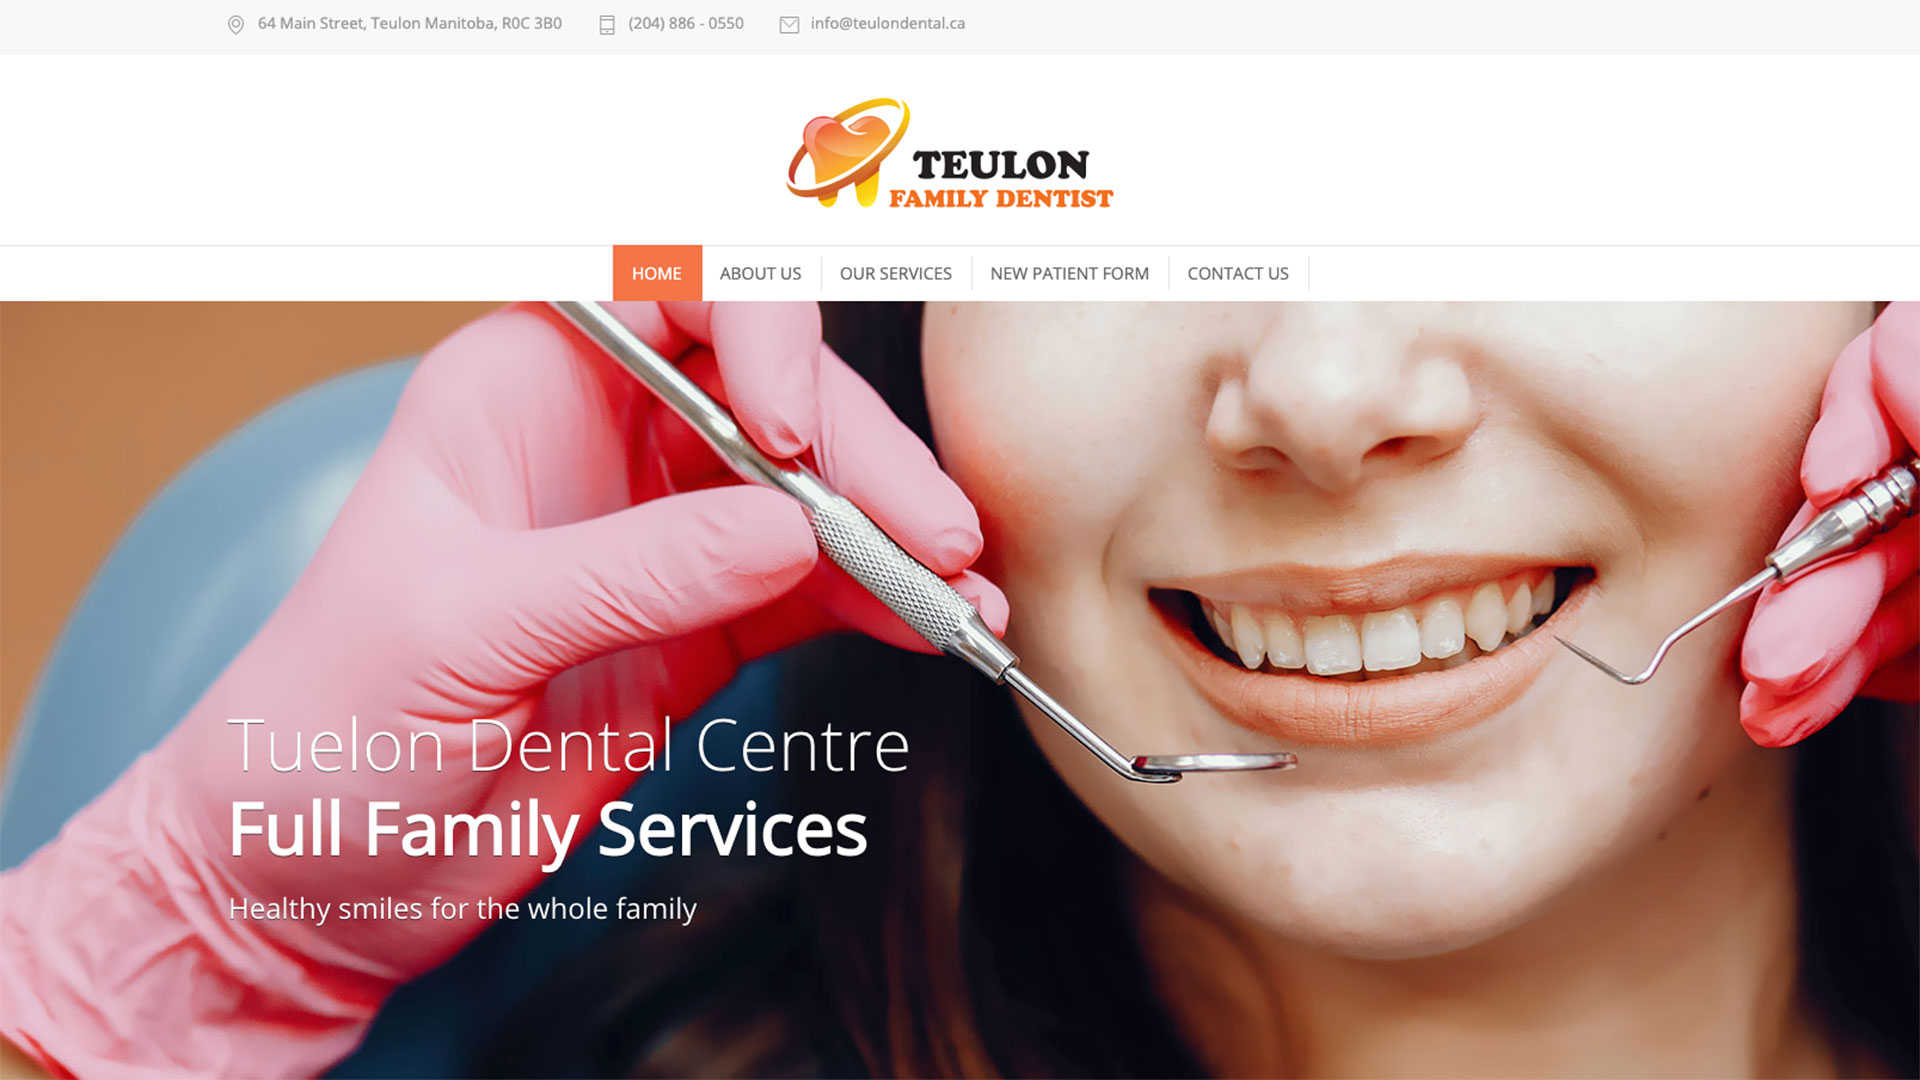 teulon-family-dentist